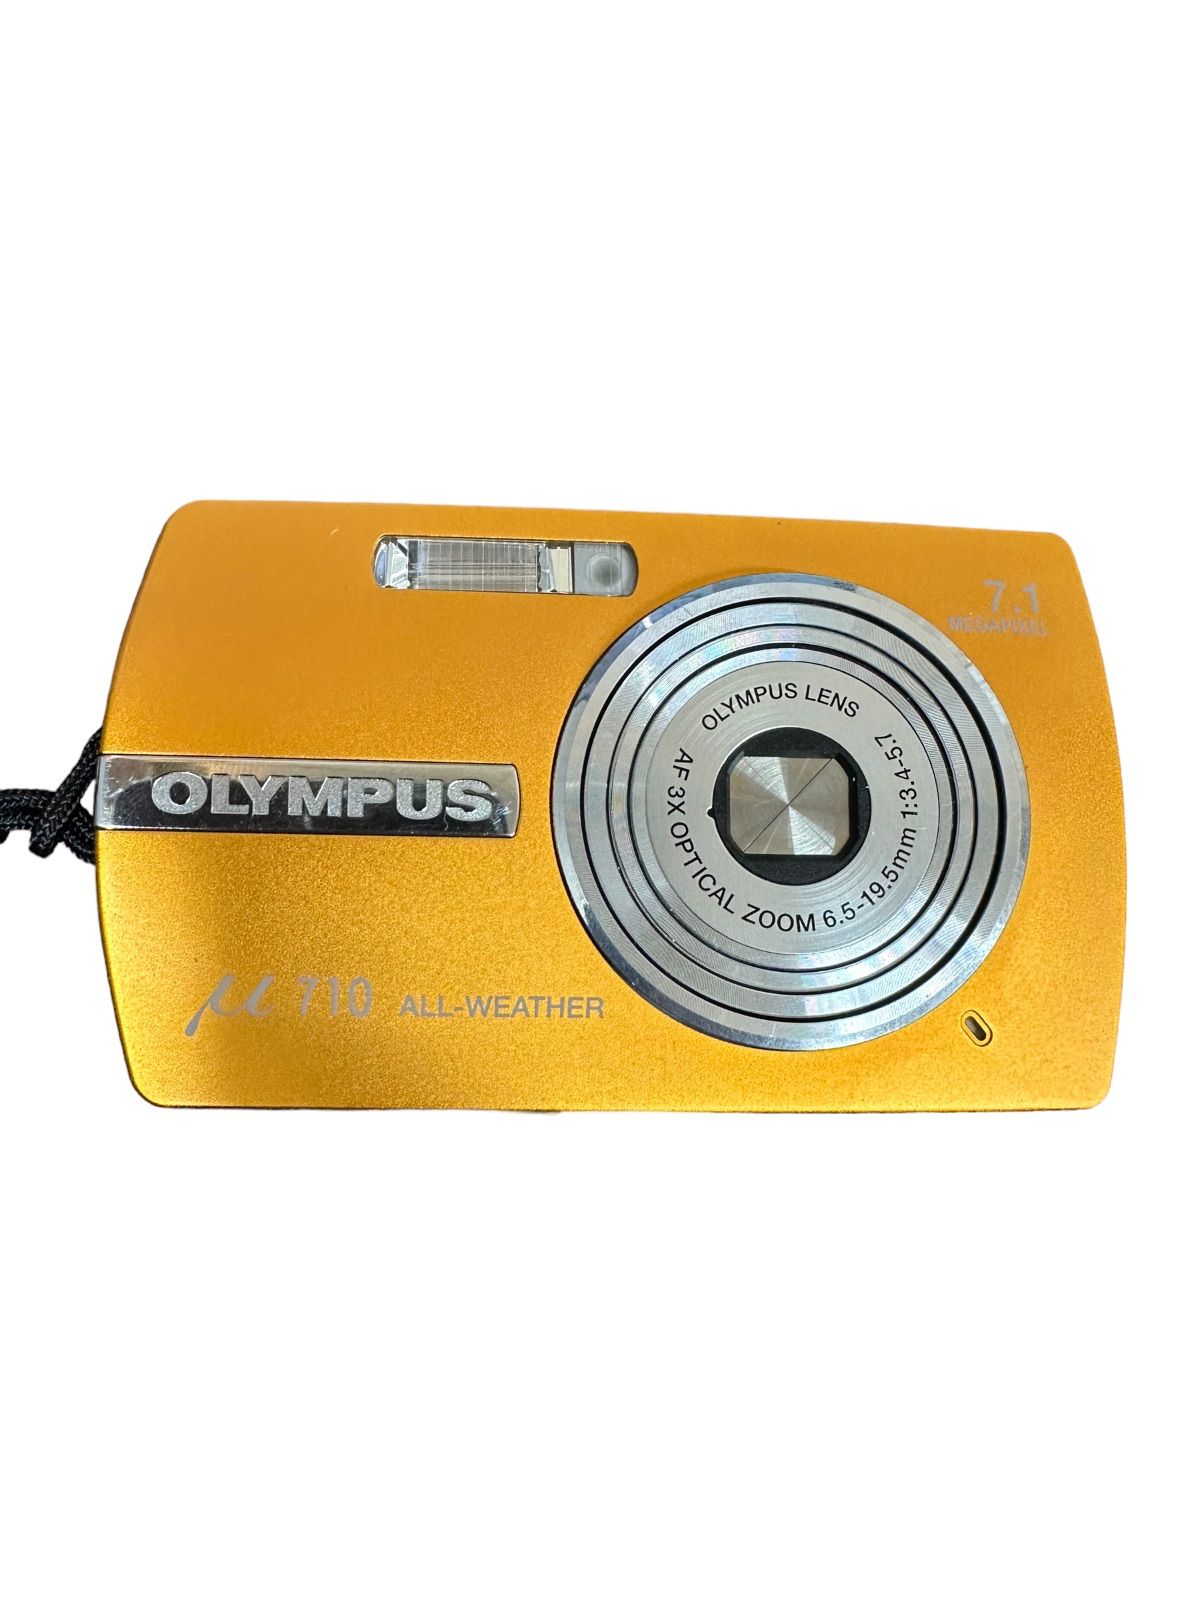 動作確認済 OLYMPUS ミュー710 デジカメ デジタルカメラOLYMPUS